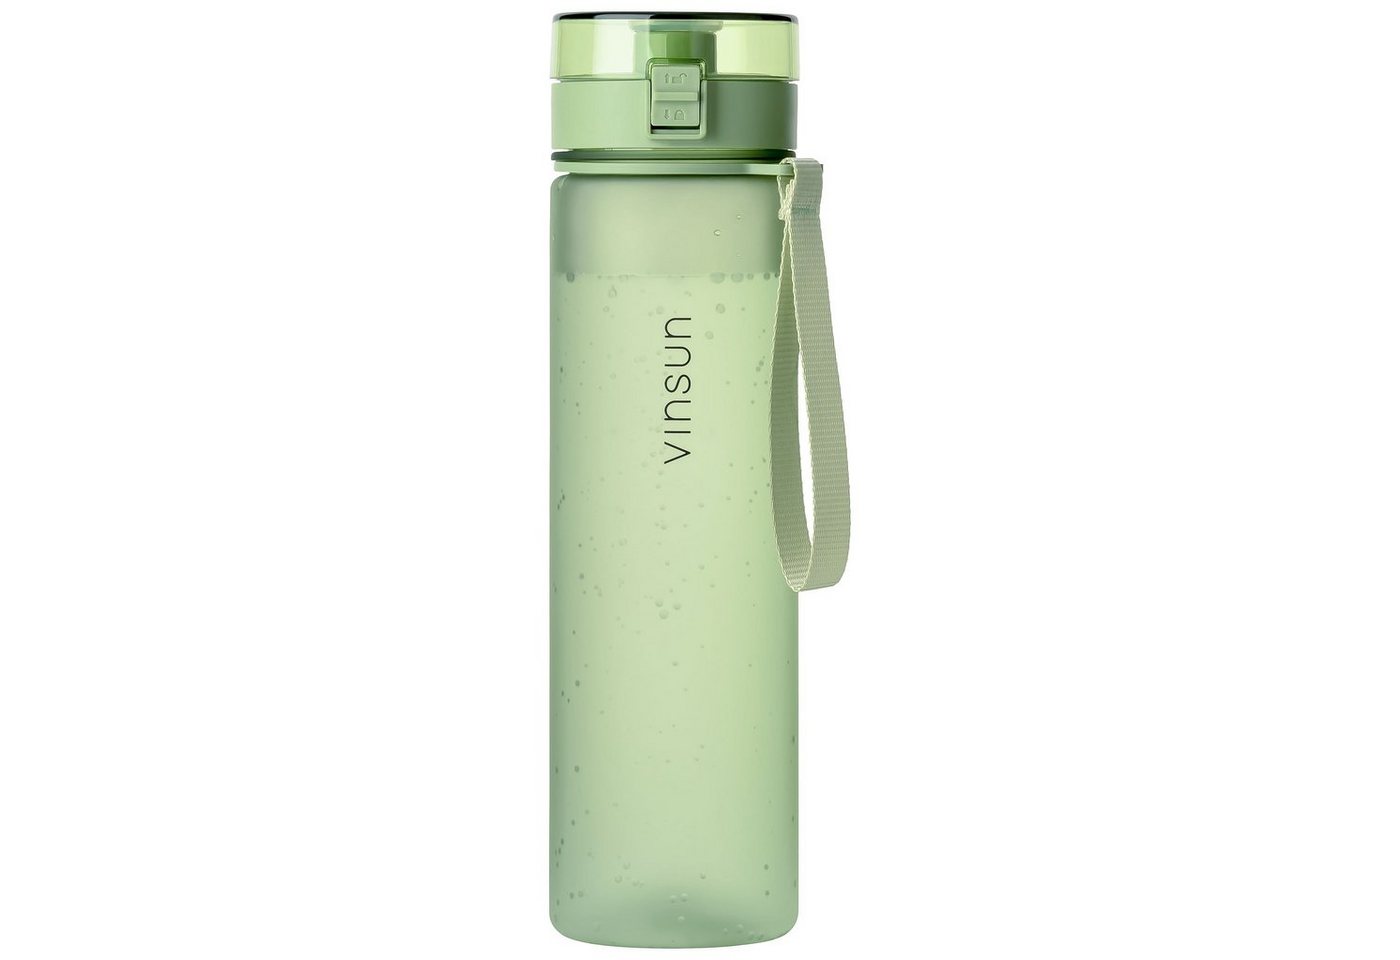 Vinsun Trinkflasche Trinkflasche 1L, Kohlensäure geeignet, auslaufsicher - Hell Grün, BPA frei, Geruchs- und Geschmacksneutral, Kohlensäure, auslaufsicher von Vinsun